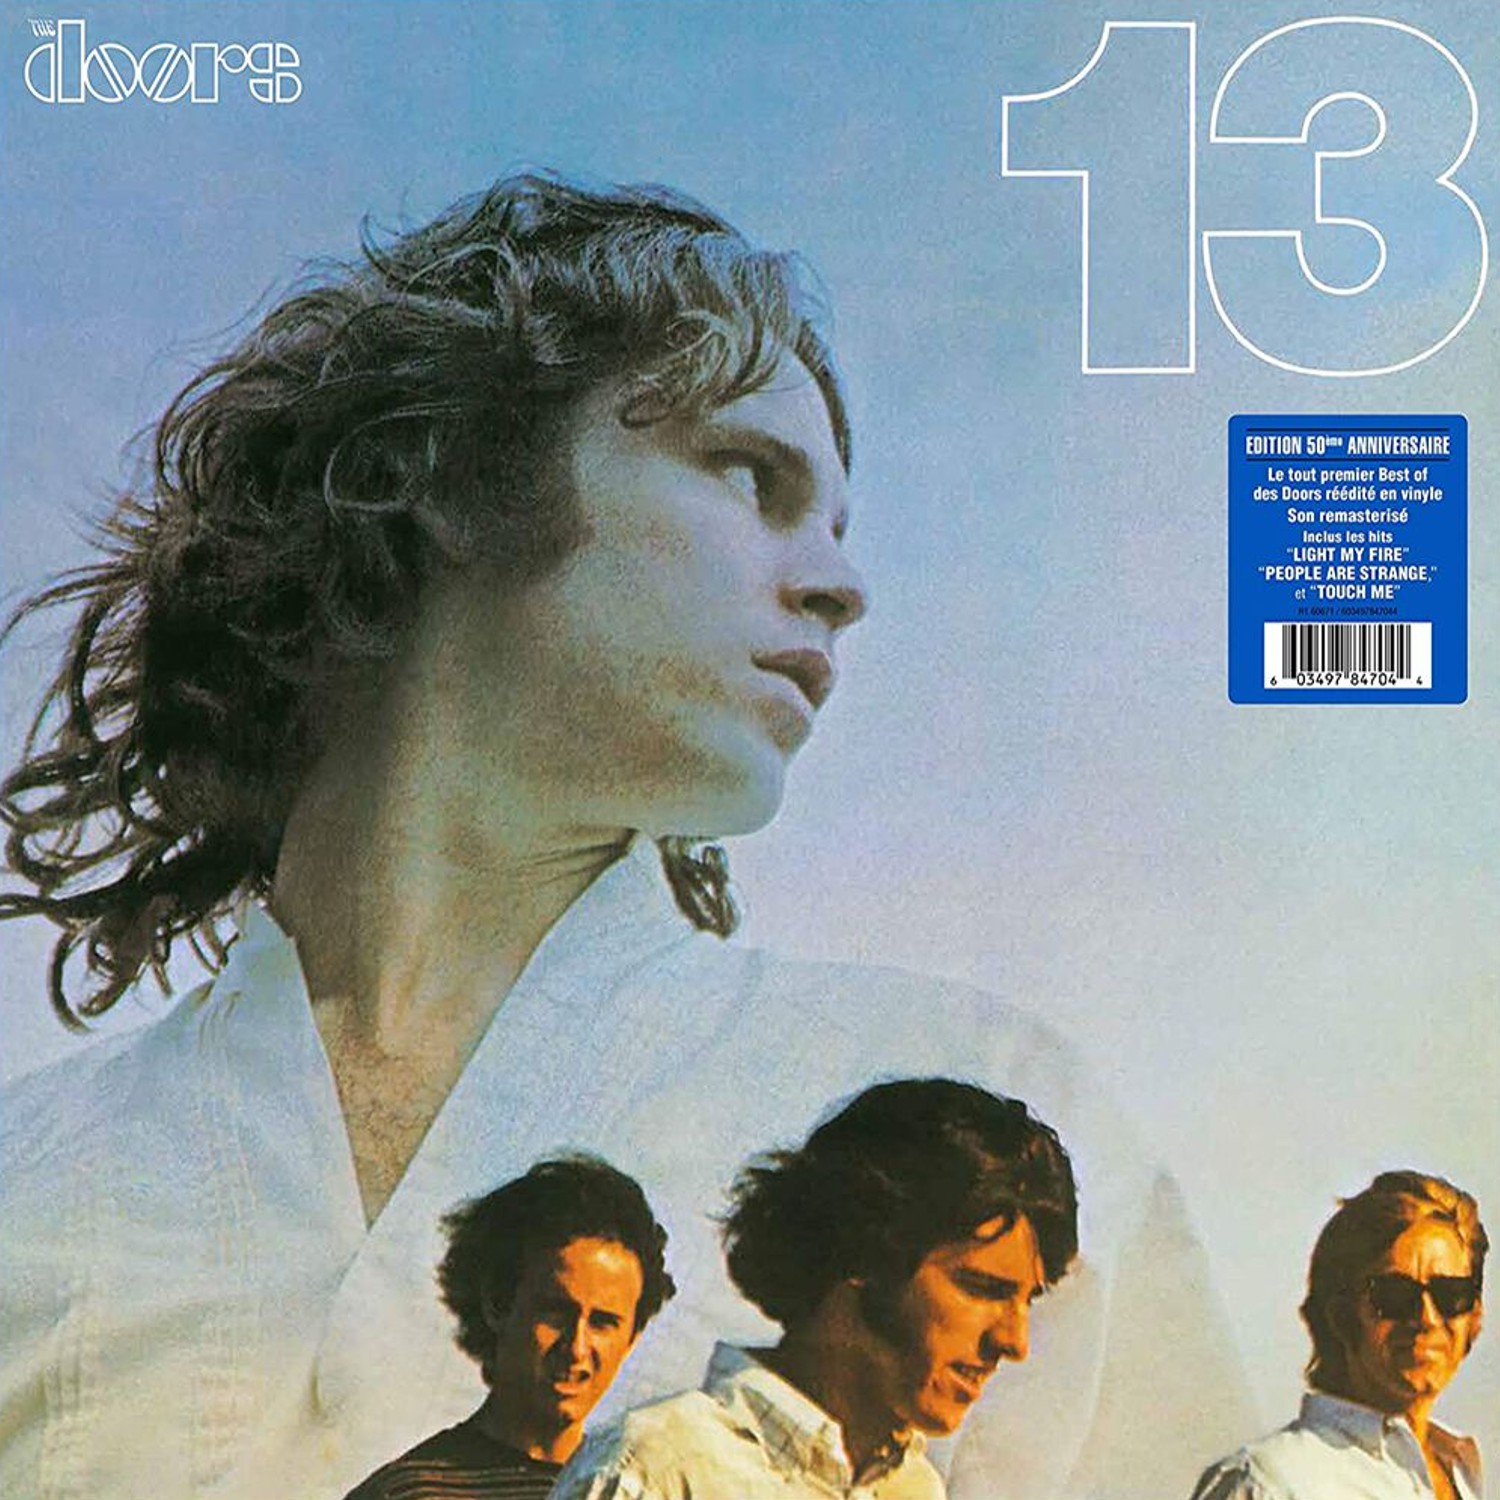 You are currently viewing Godišnjica objavljivanja kompilacijskog albuma 13 američkog rock-sastava The Doors